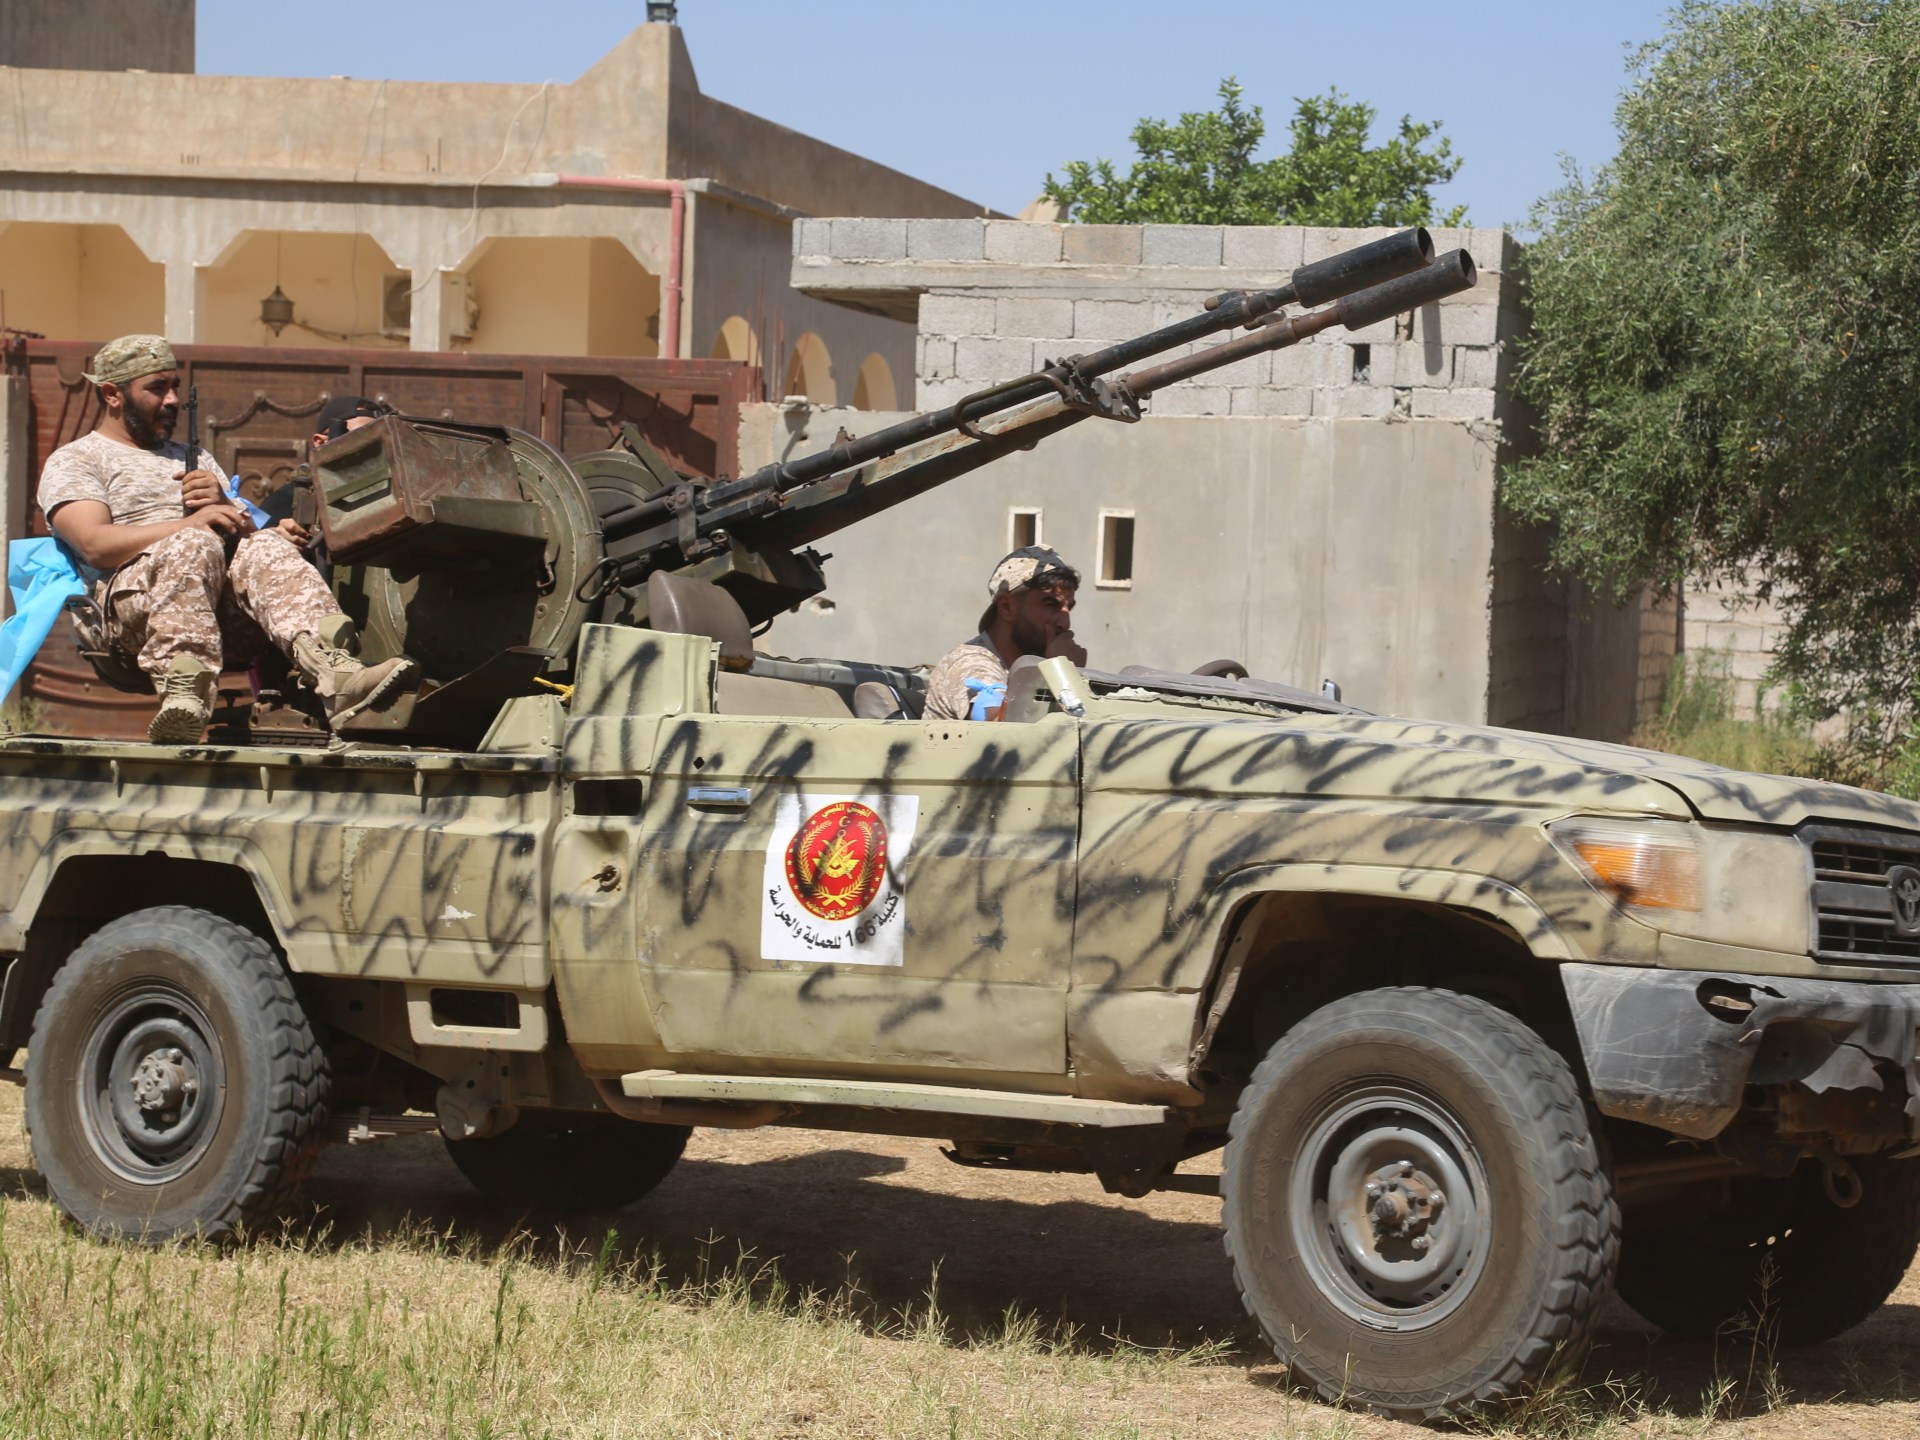 اتفاق لإخلاء العاصمة الليبية من المظاهر المسلحة | أخبار – البوكس نيوز